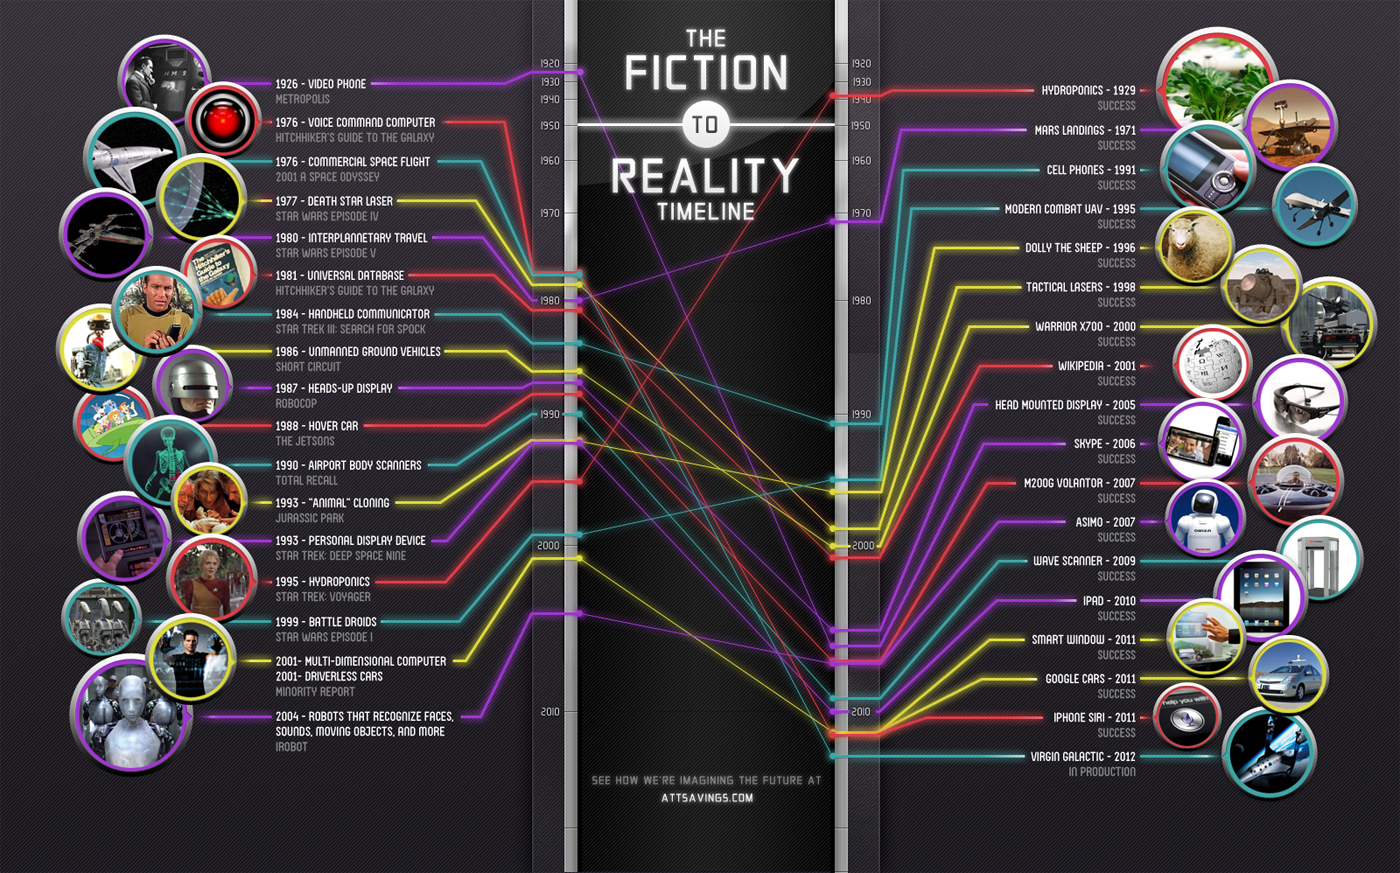 the-fiction-to-reality-timeline_5029152e36b80